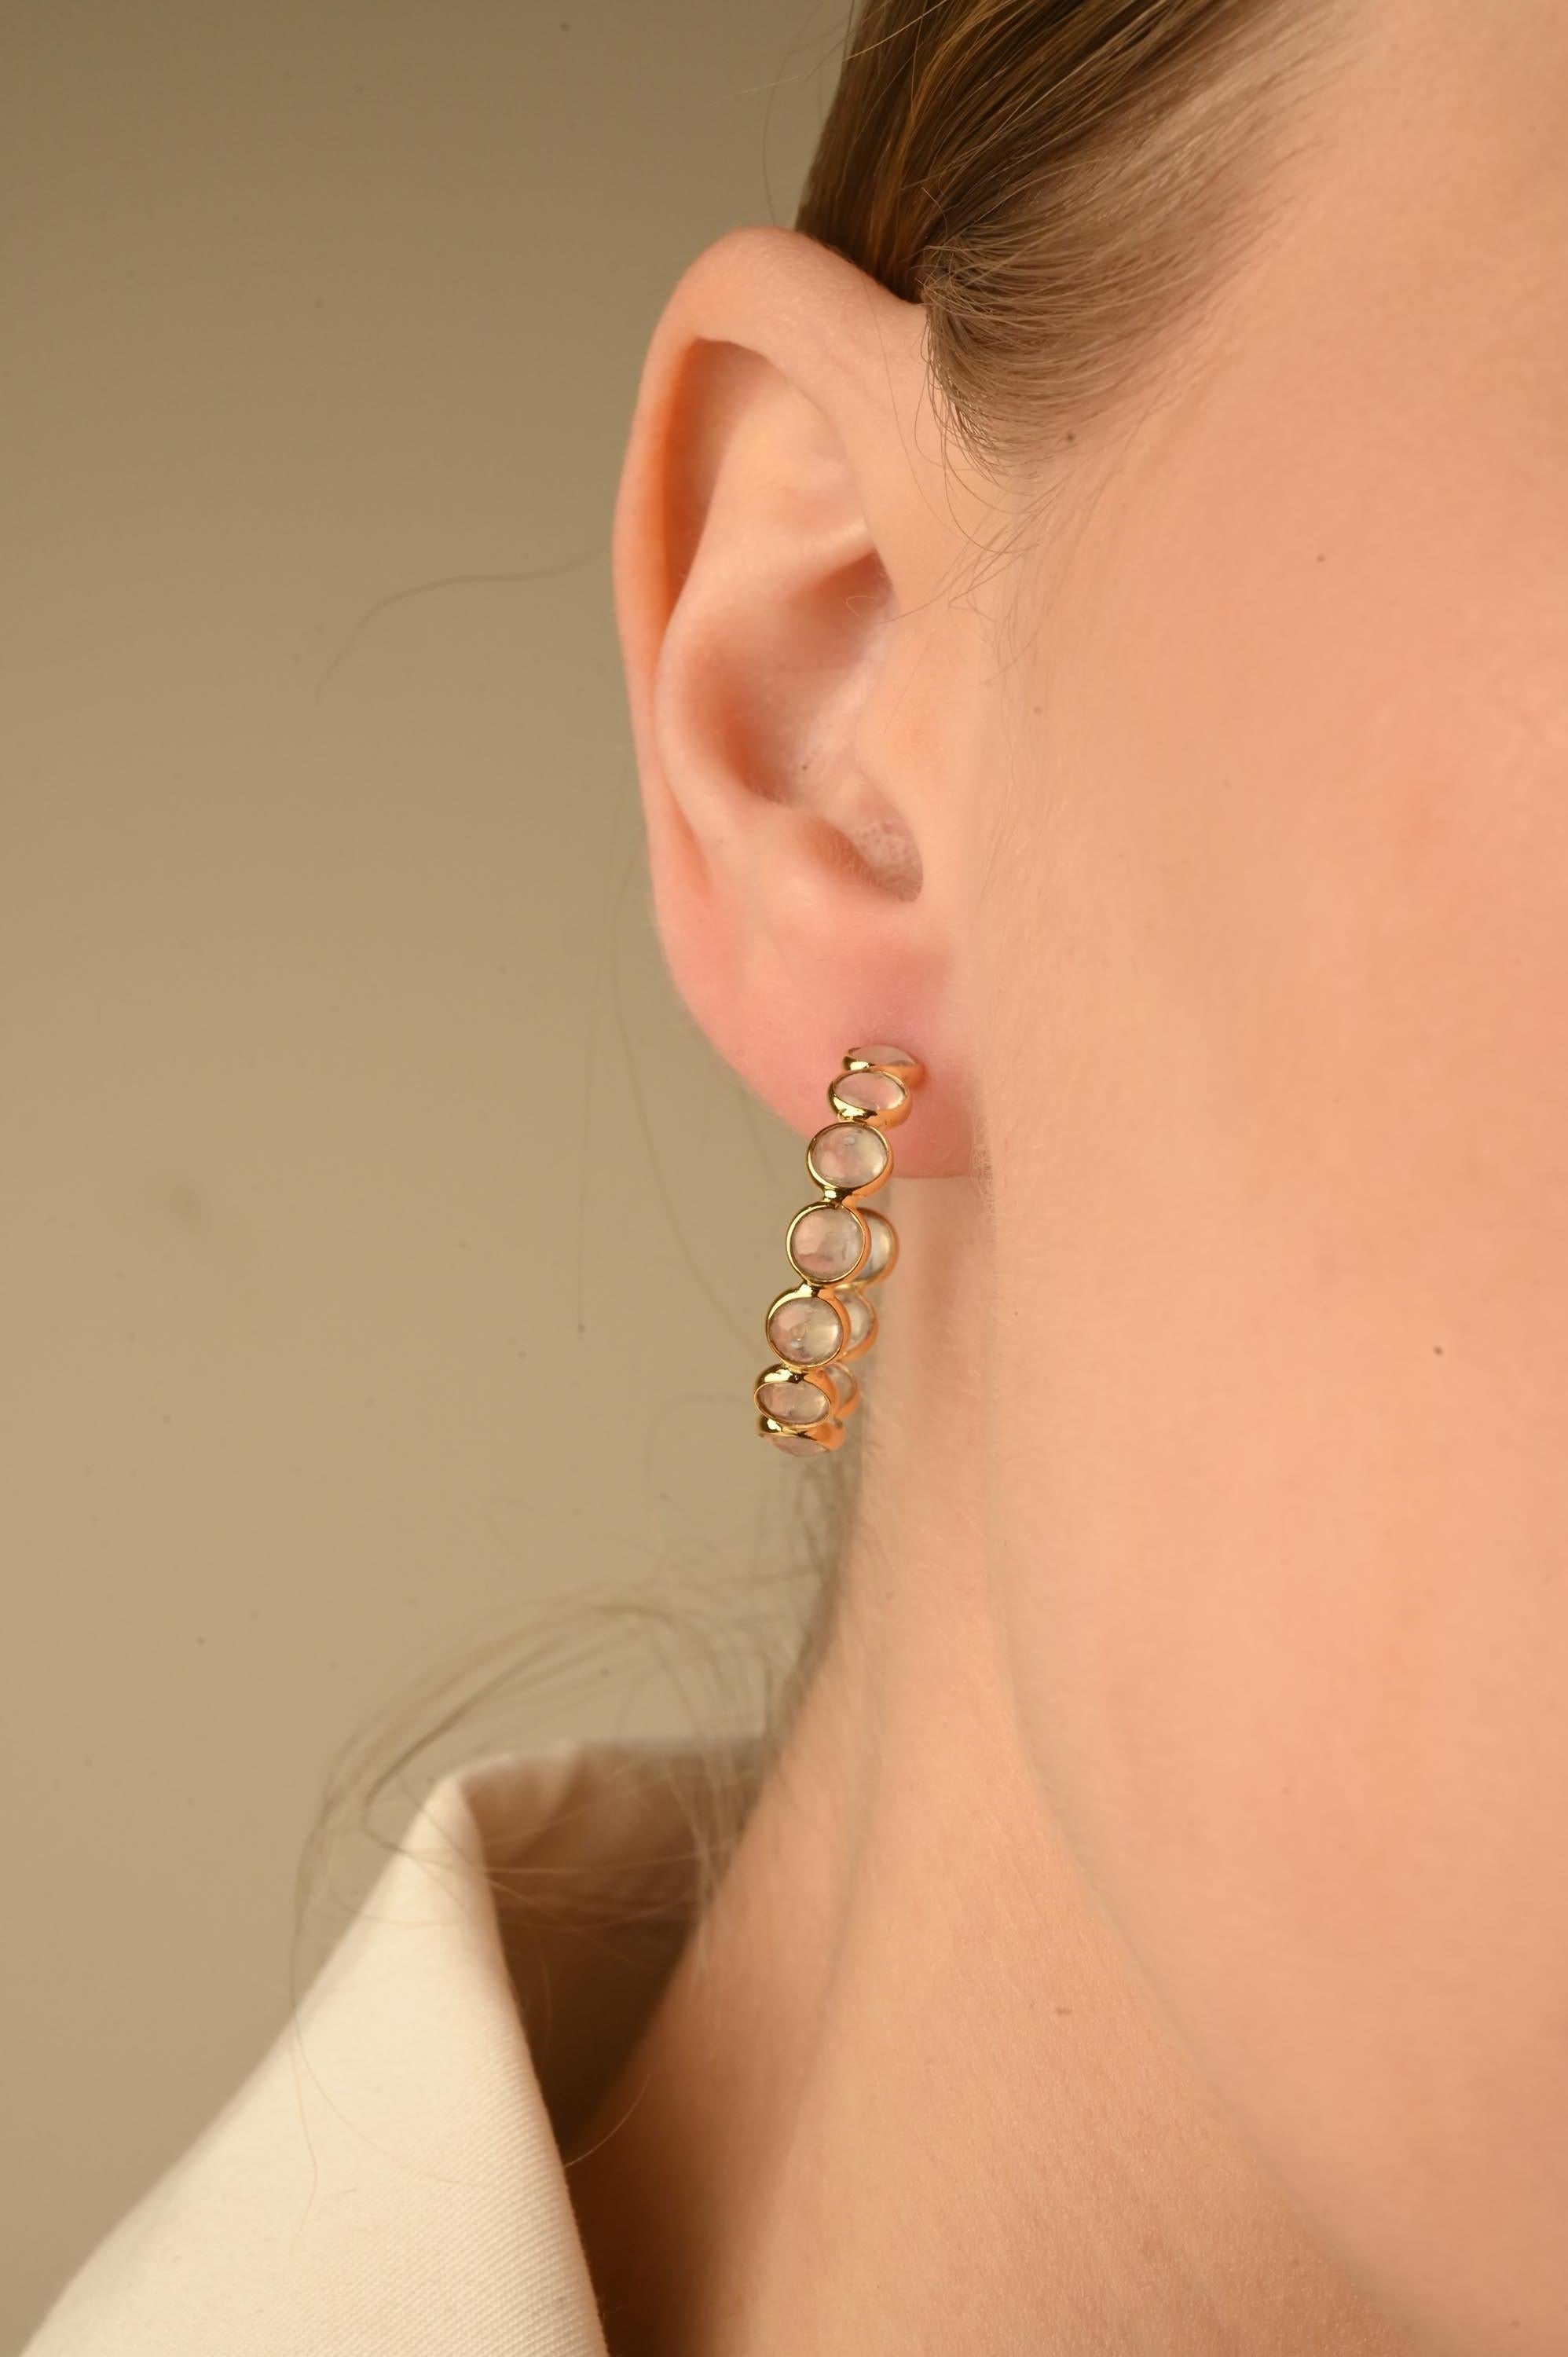 Regenbogen-Mondstein-Ohrringe aus 14-karätigem Gold, um mit Ihrem Look ein Statement zu setzen. Um mit Ihrem Look ein Statement zu setzen, brauchen Sie offene Reif-Ohrringe. Diese Ohrringe mit rund geschliffenem Edelstein sorgen für einen